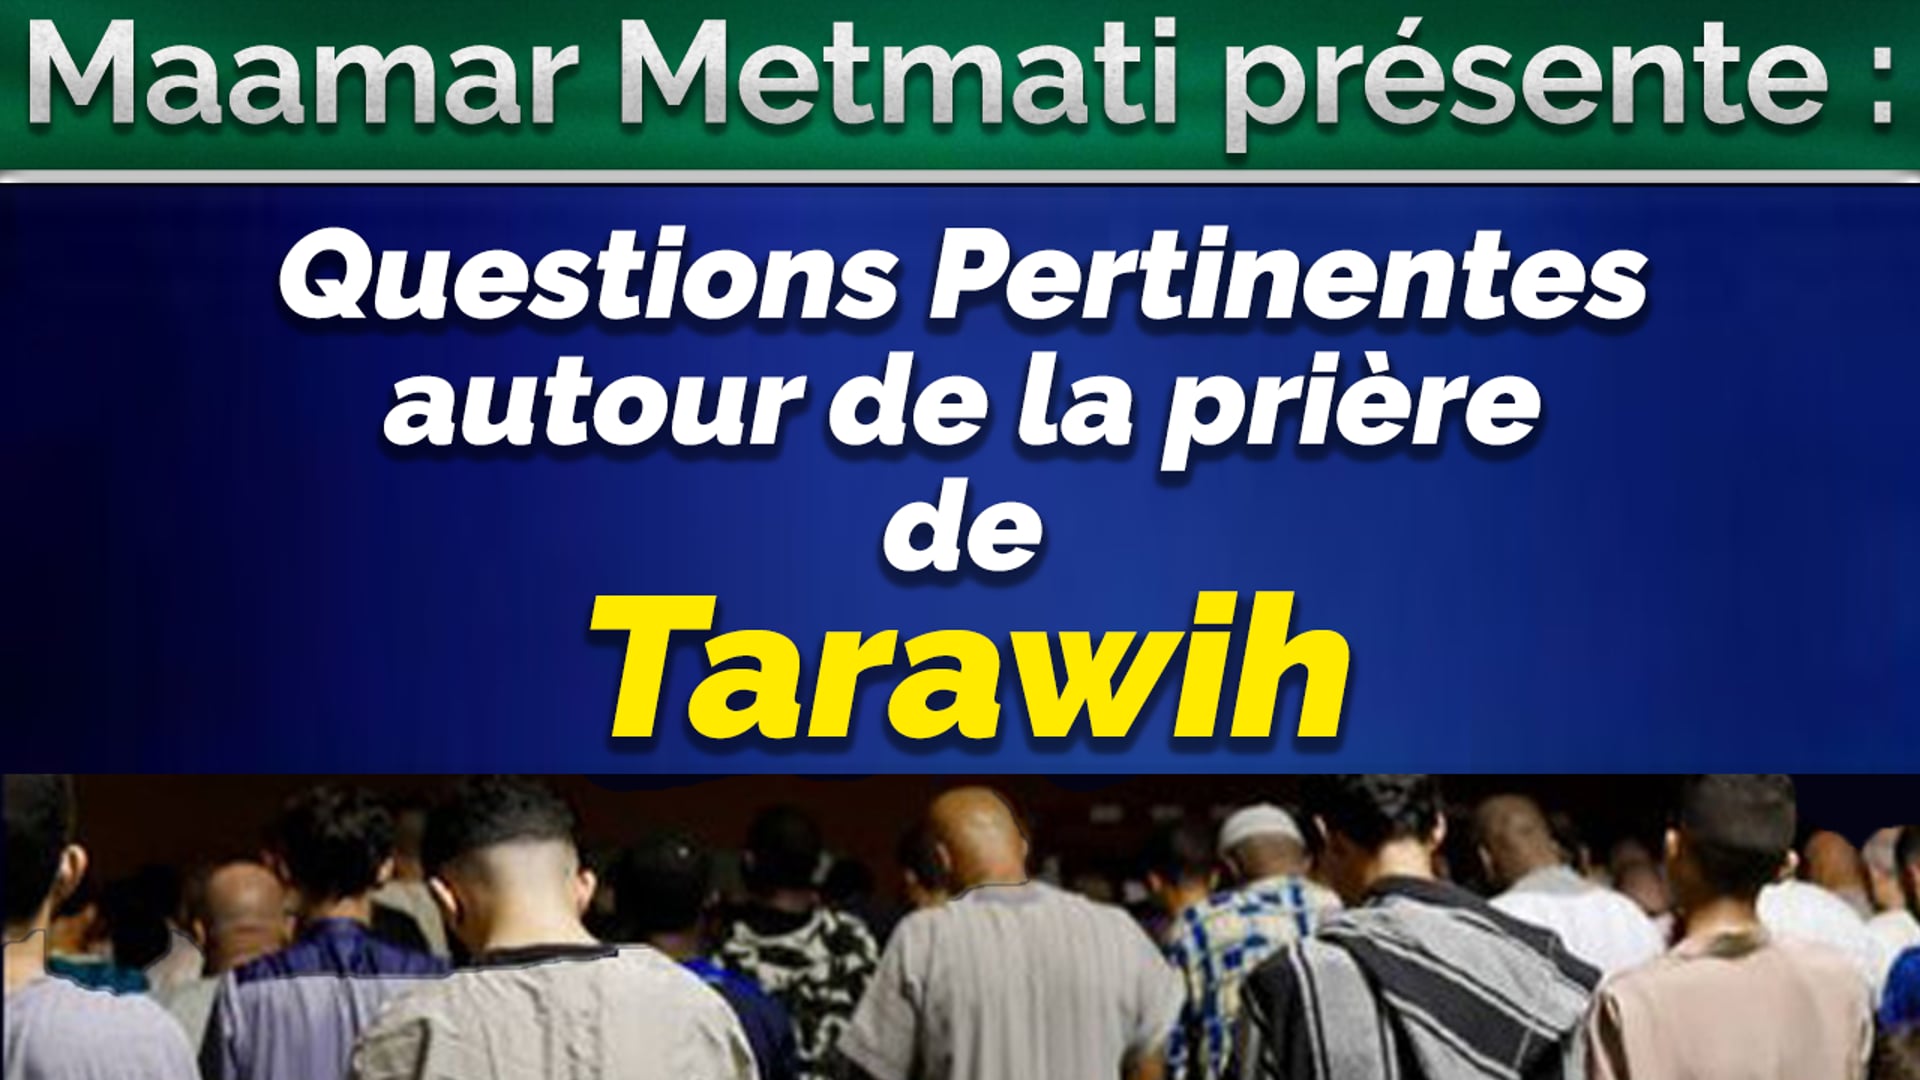 Questions pertinentes autour de la prière de Tarawih